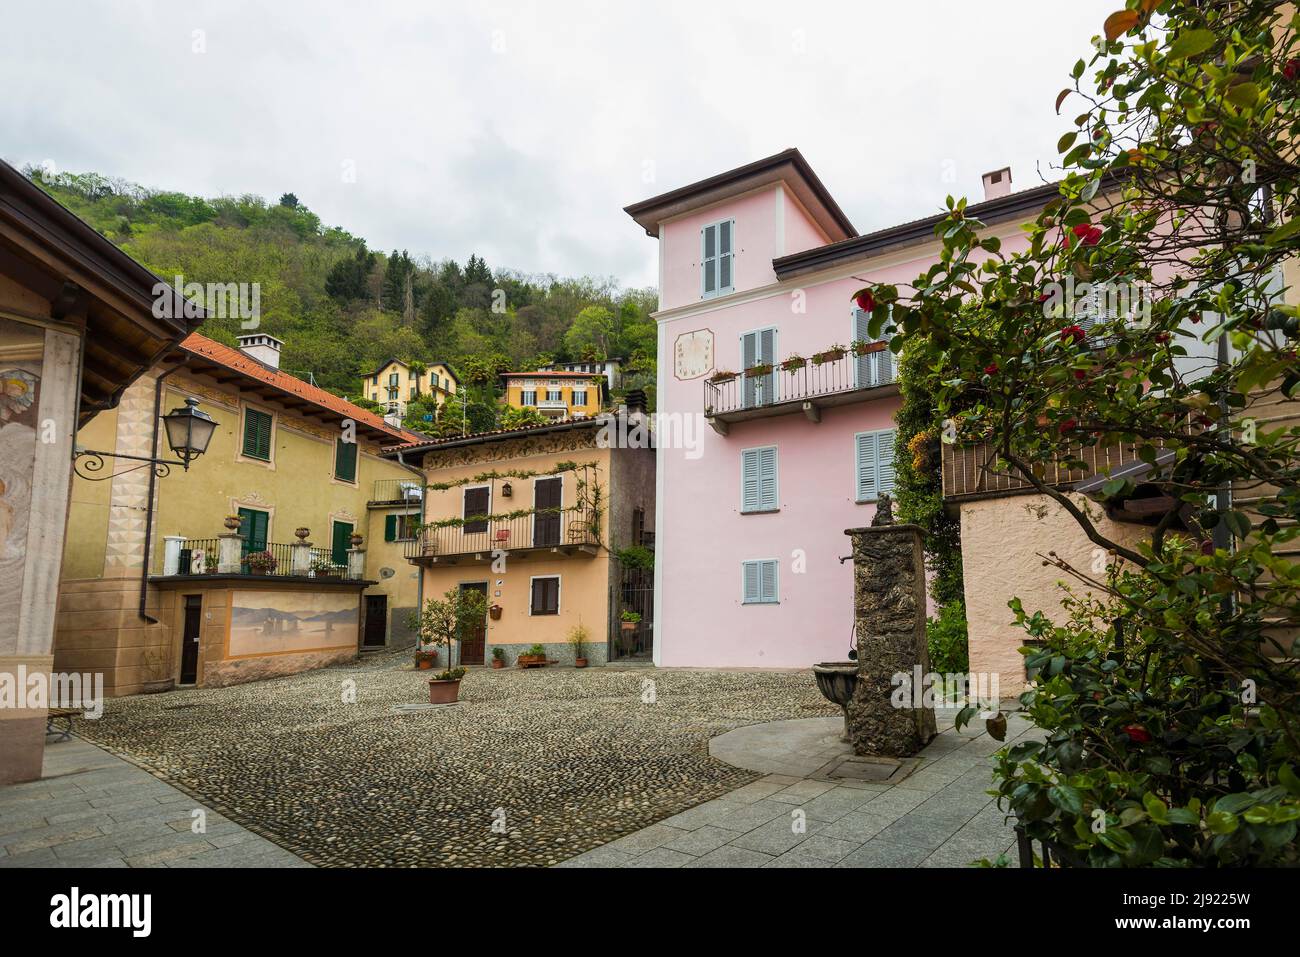 Village square and colourful houses, Cannero Riviera, Lake Maggiore, Province of Verbano-Cusio-Ossola, Piedmont Region, Italy Stock Photo